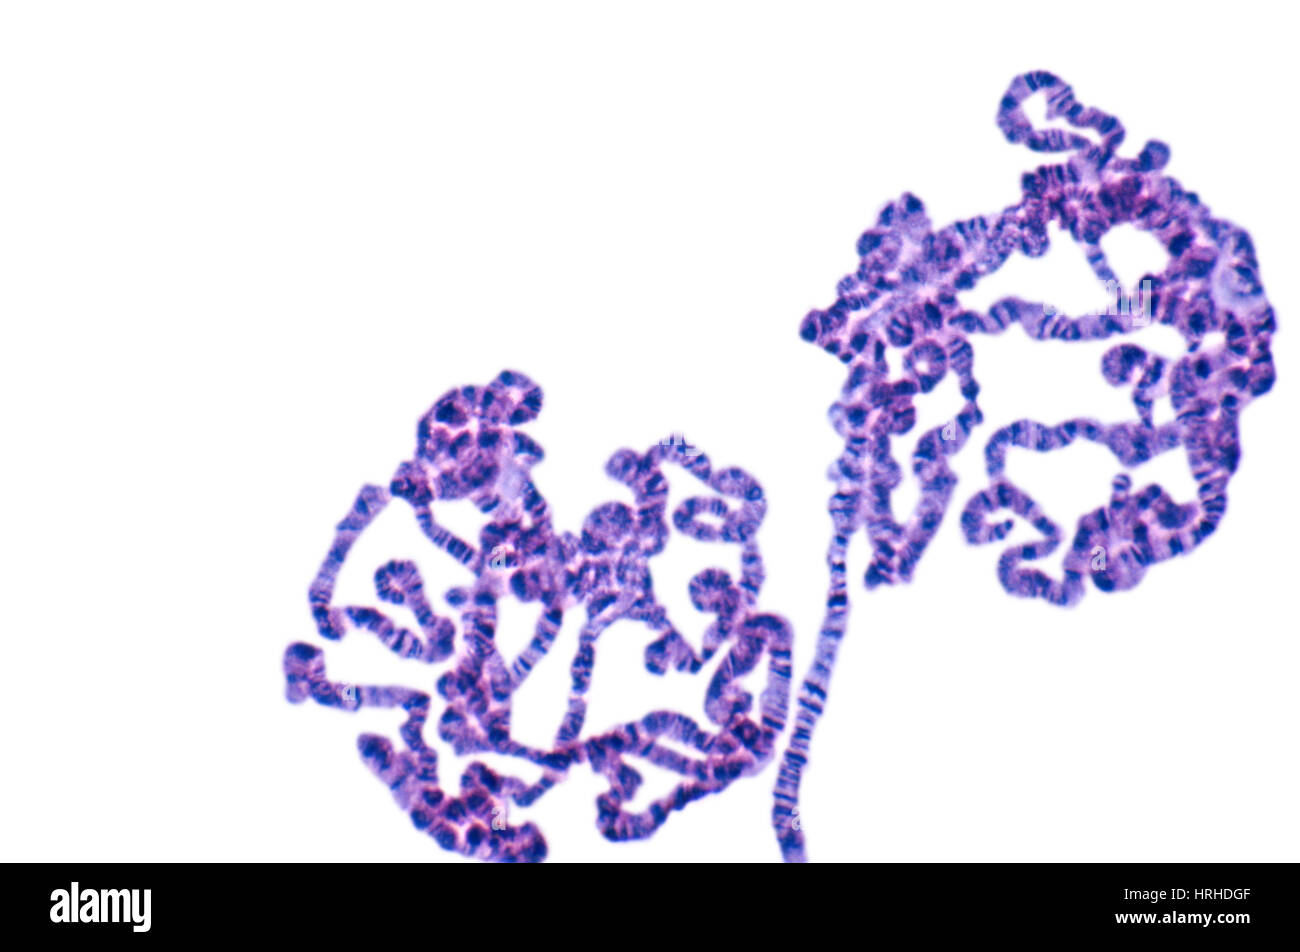 Fruchtfliege Speicheldrüse Chromosomen Stockfoto